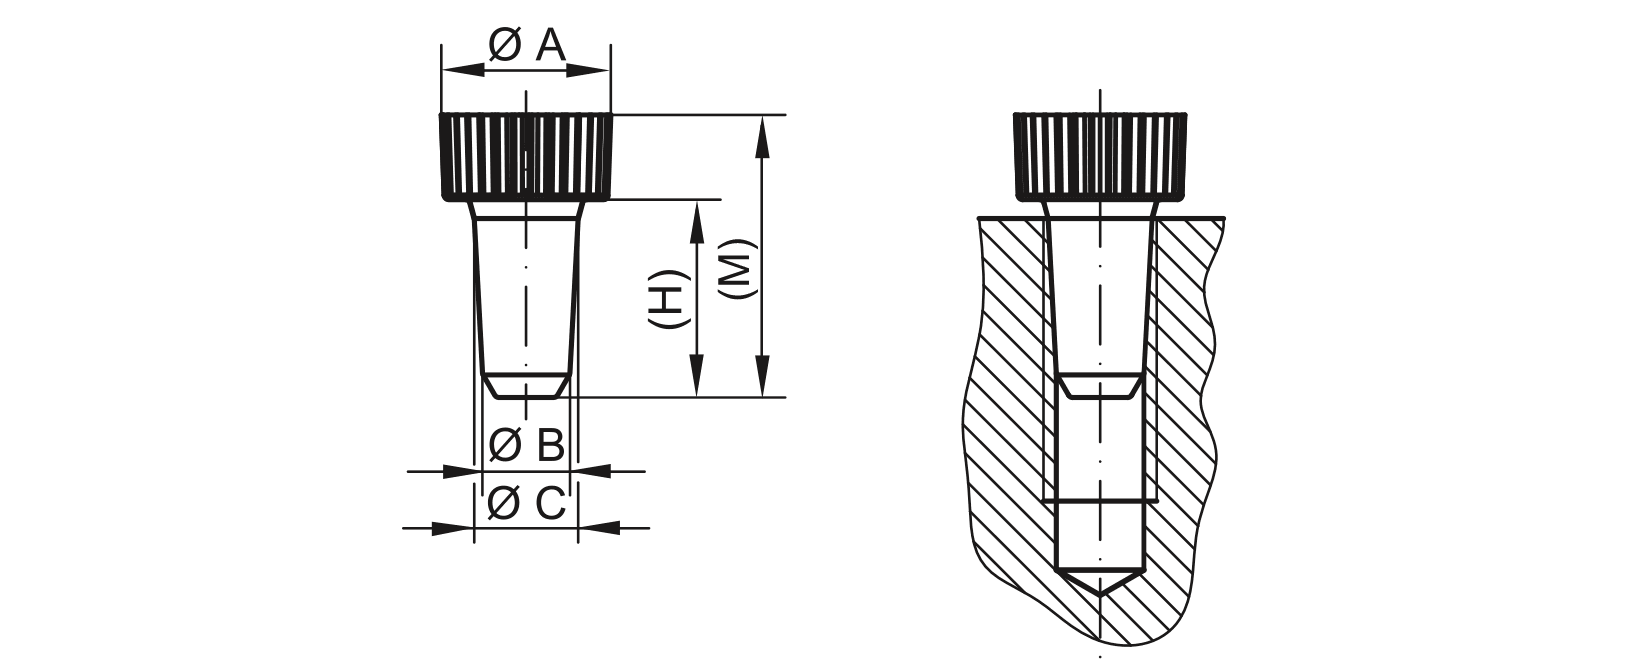 Elementos de inserción de dibujo - GPN 551